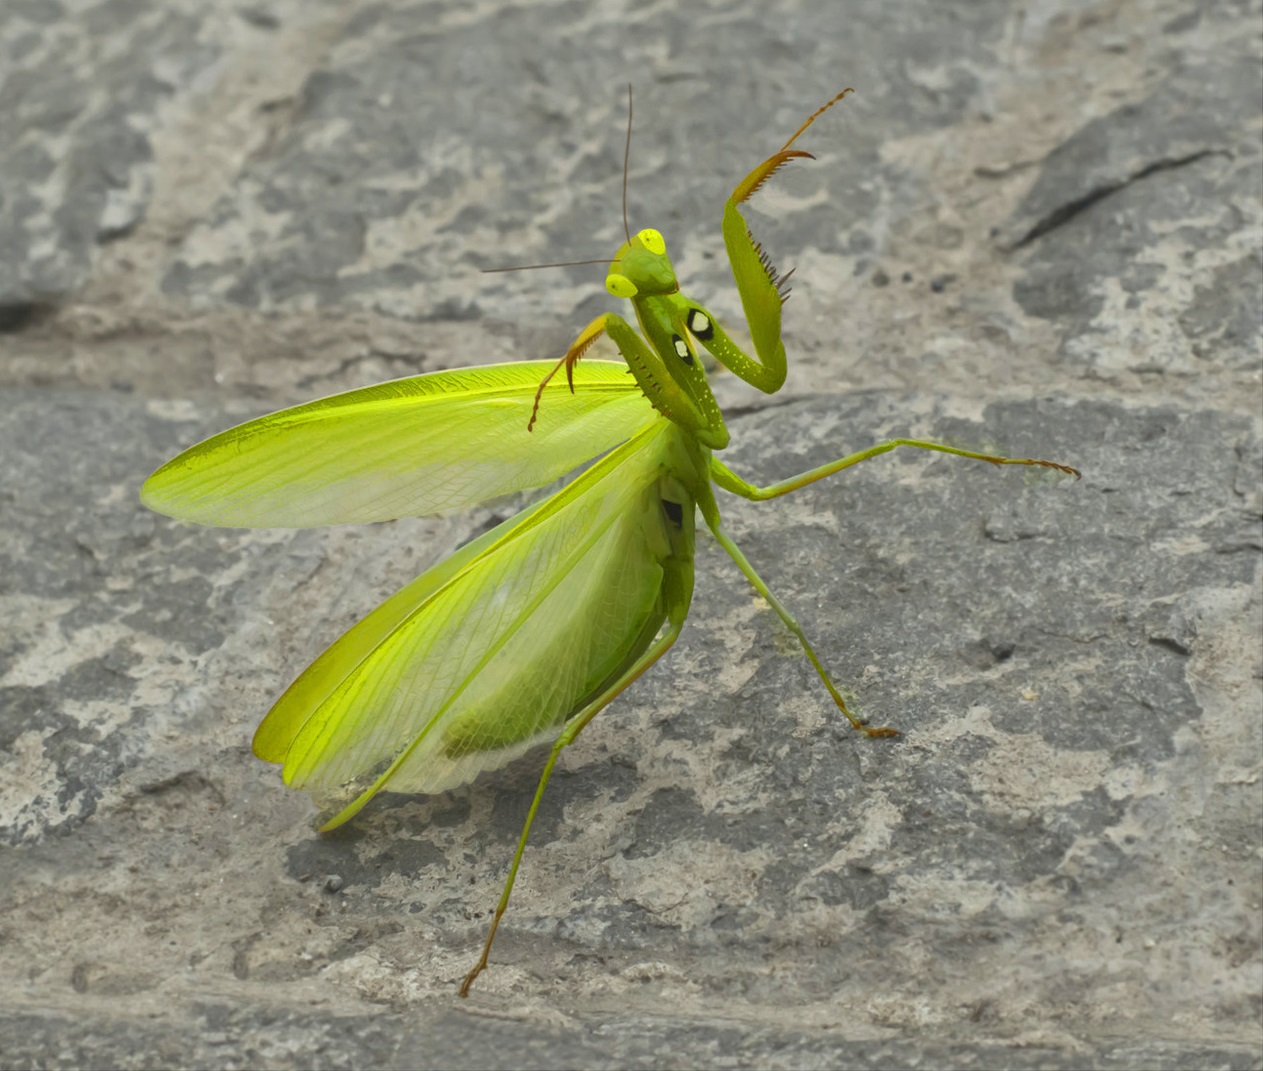 Mantis àbhaisteach, no mantis cràbhach (lat. Mantis religiosa)